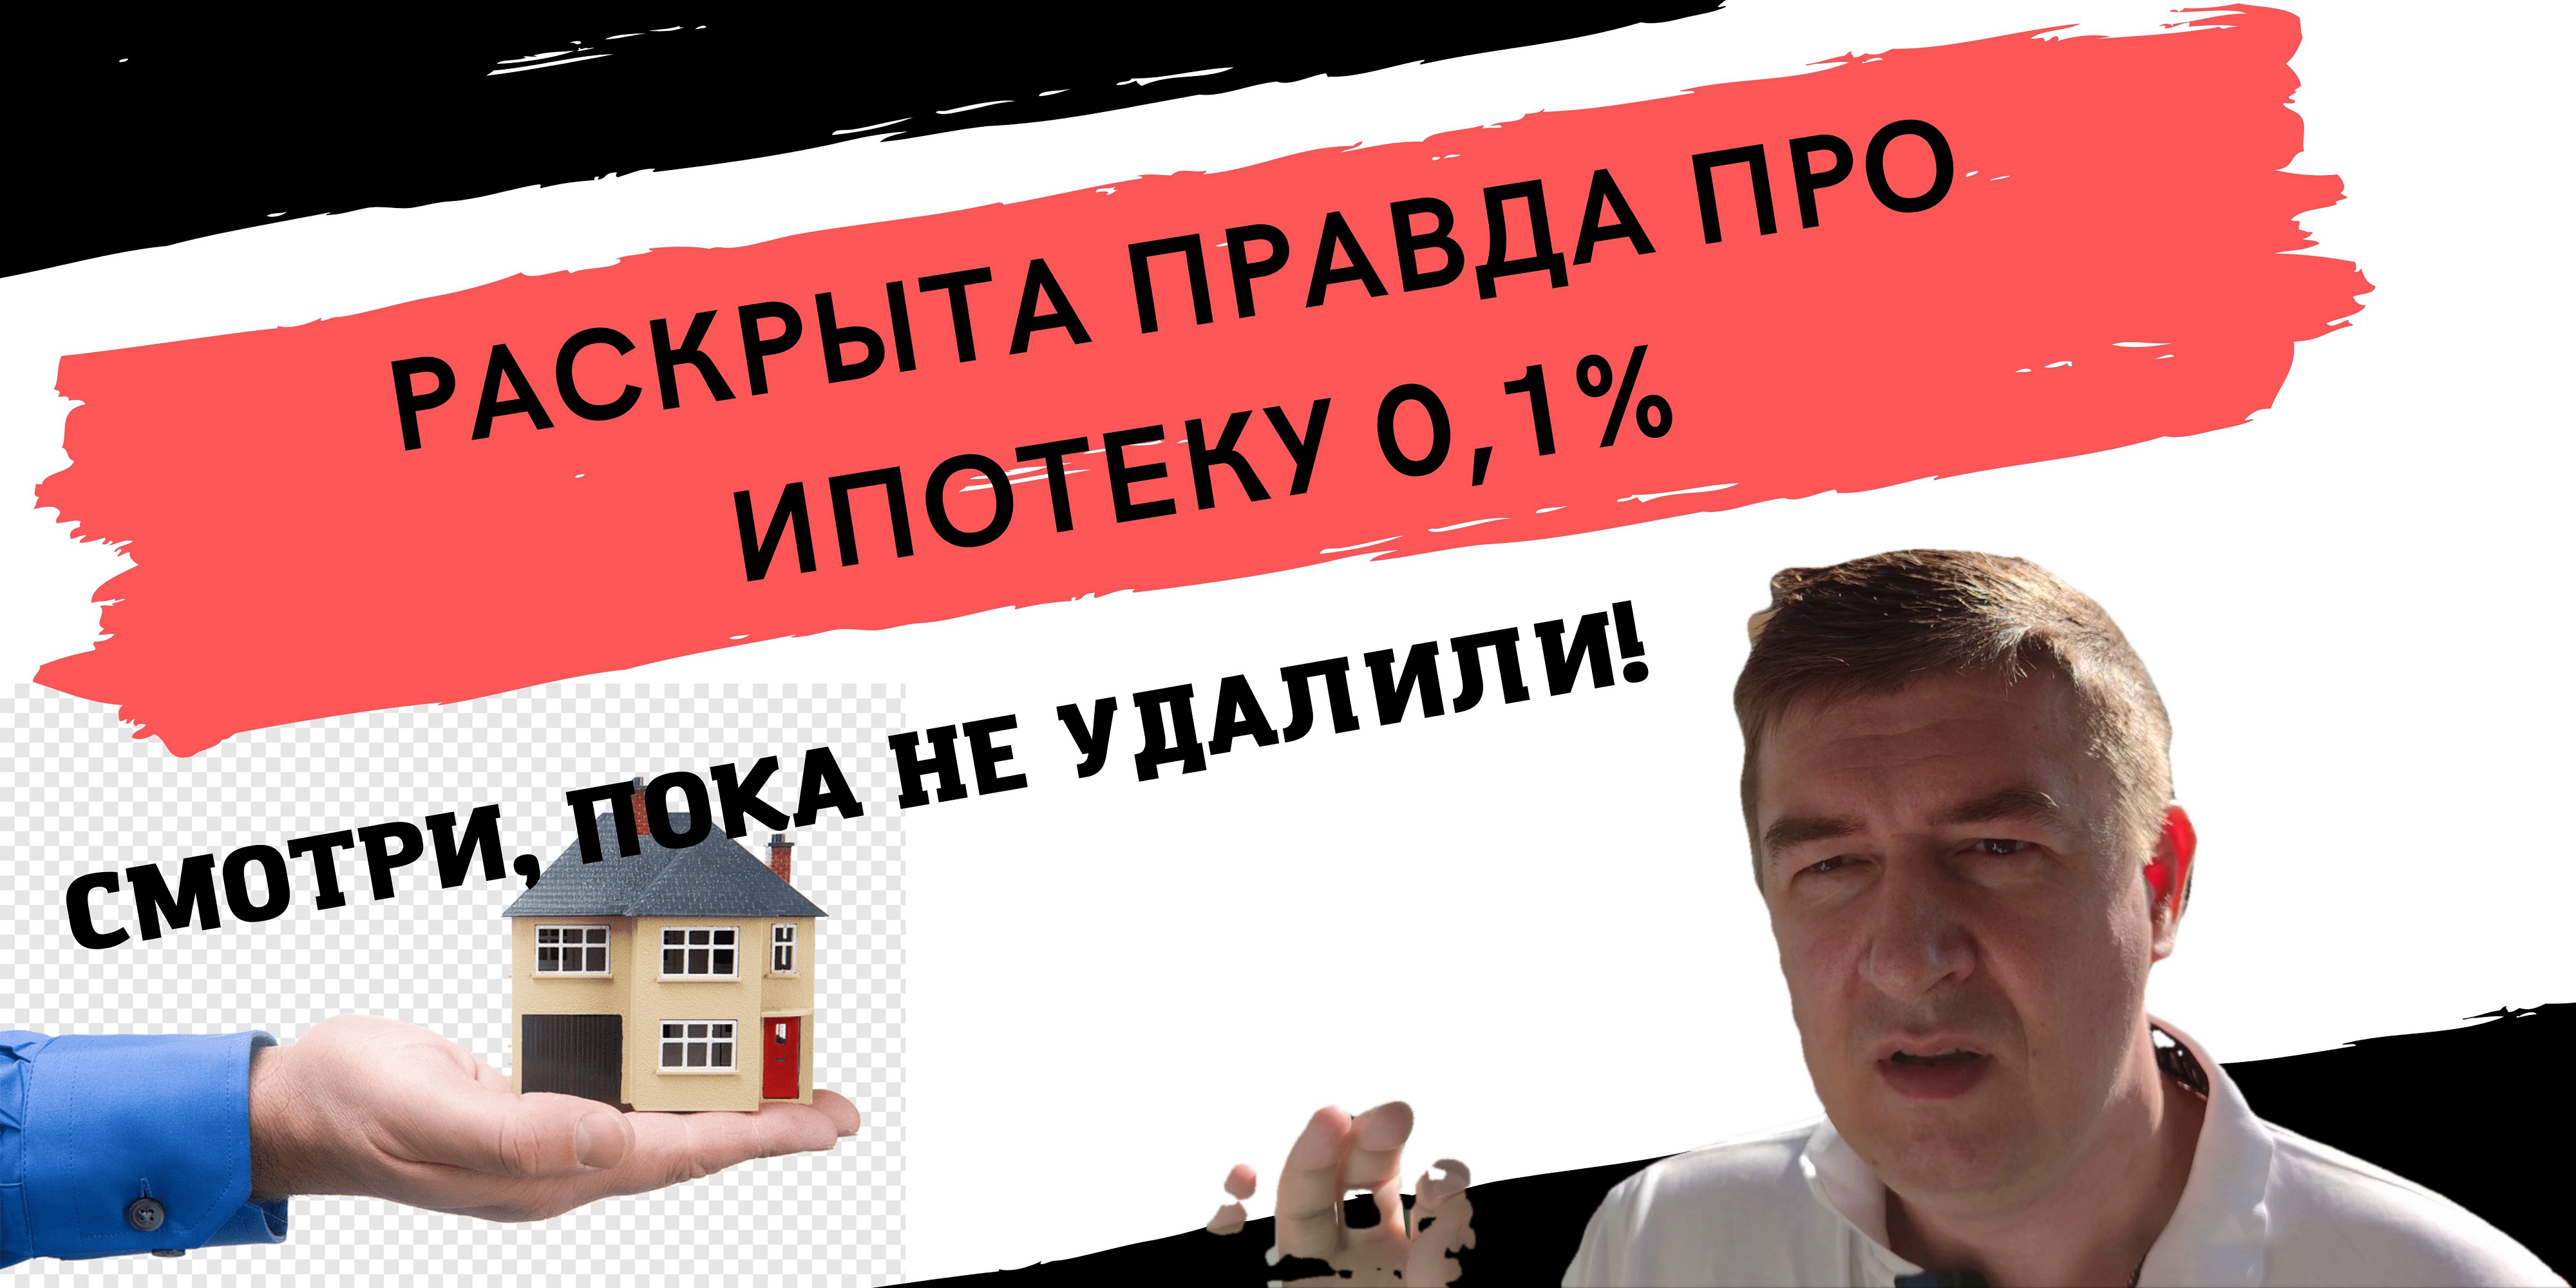 Ипотека 0.1 процент в москве застройщик. Ипотека под 0%. Ипотека в Москве. Ипотека 0,1%.